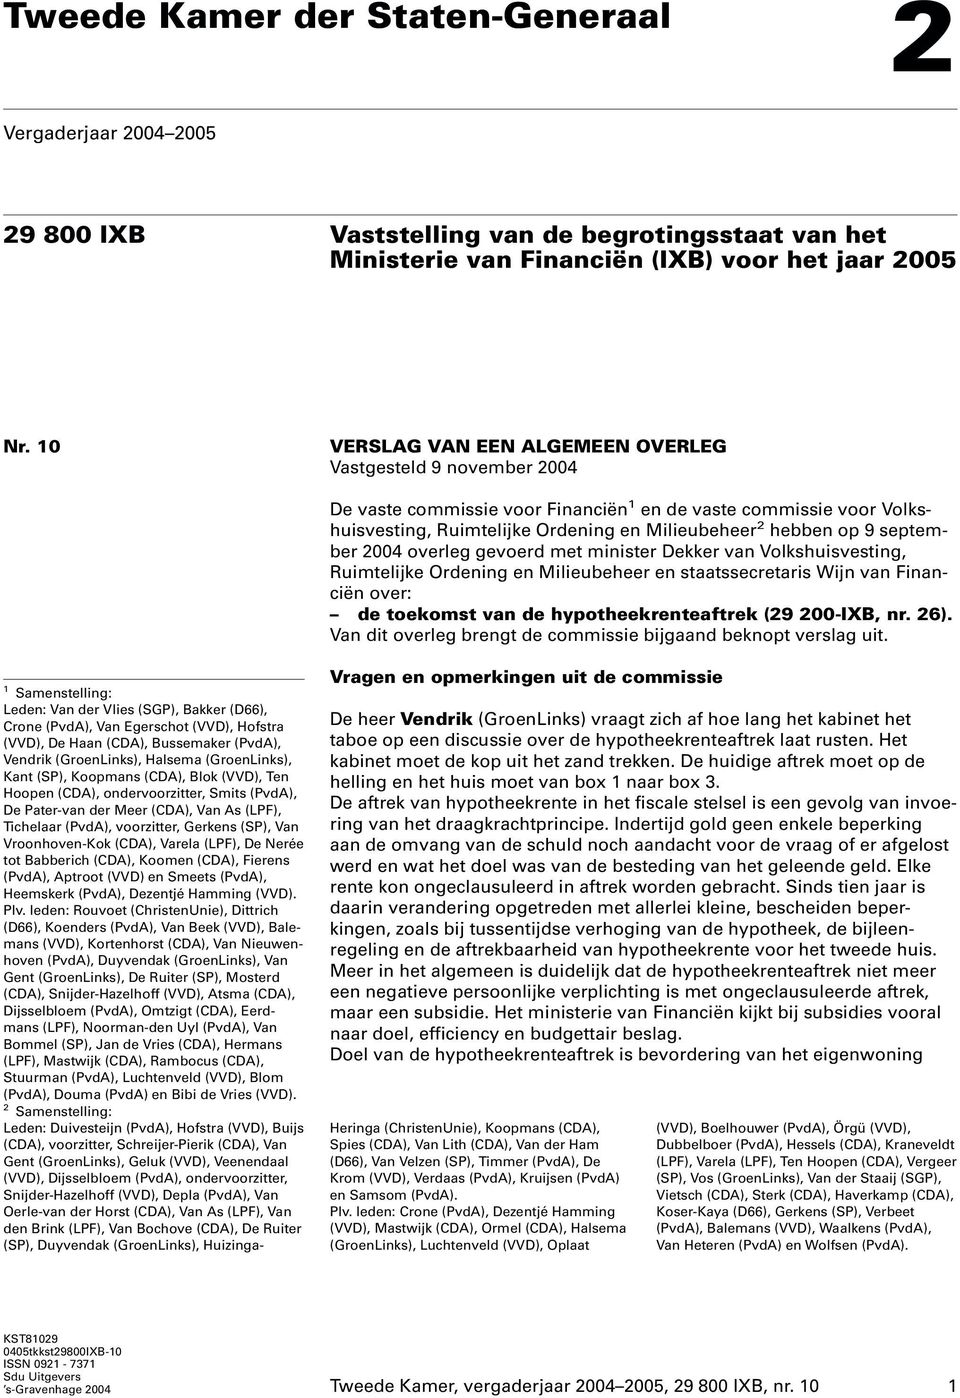 september 2004 overleg gevoerd met minister Dekker van Volkshuisvesting, Ruimtelijke Ordening en Milieubeheer en staatssecretaris Wijn van Financiën over: de toekomst van de hypotheekrenteaftrek (29